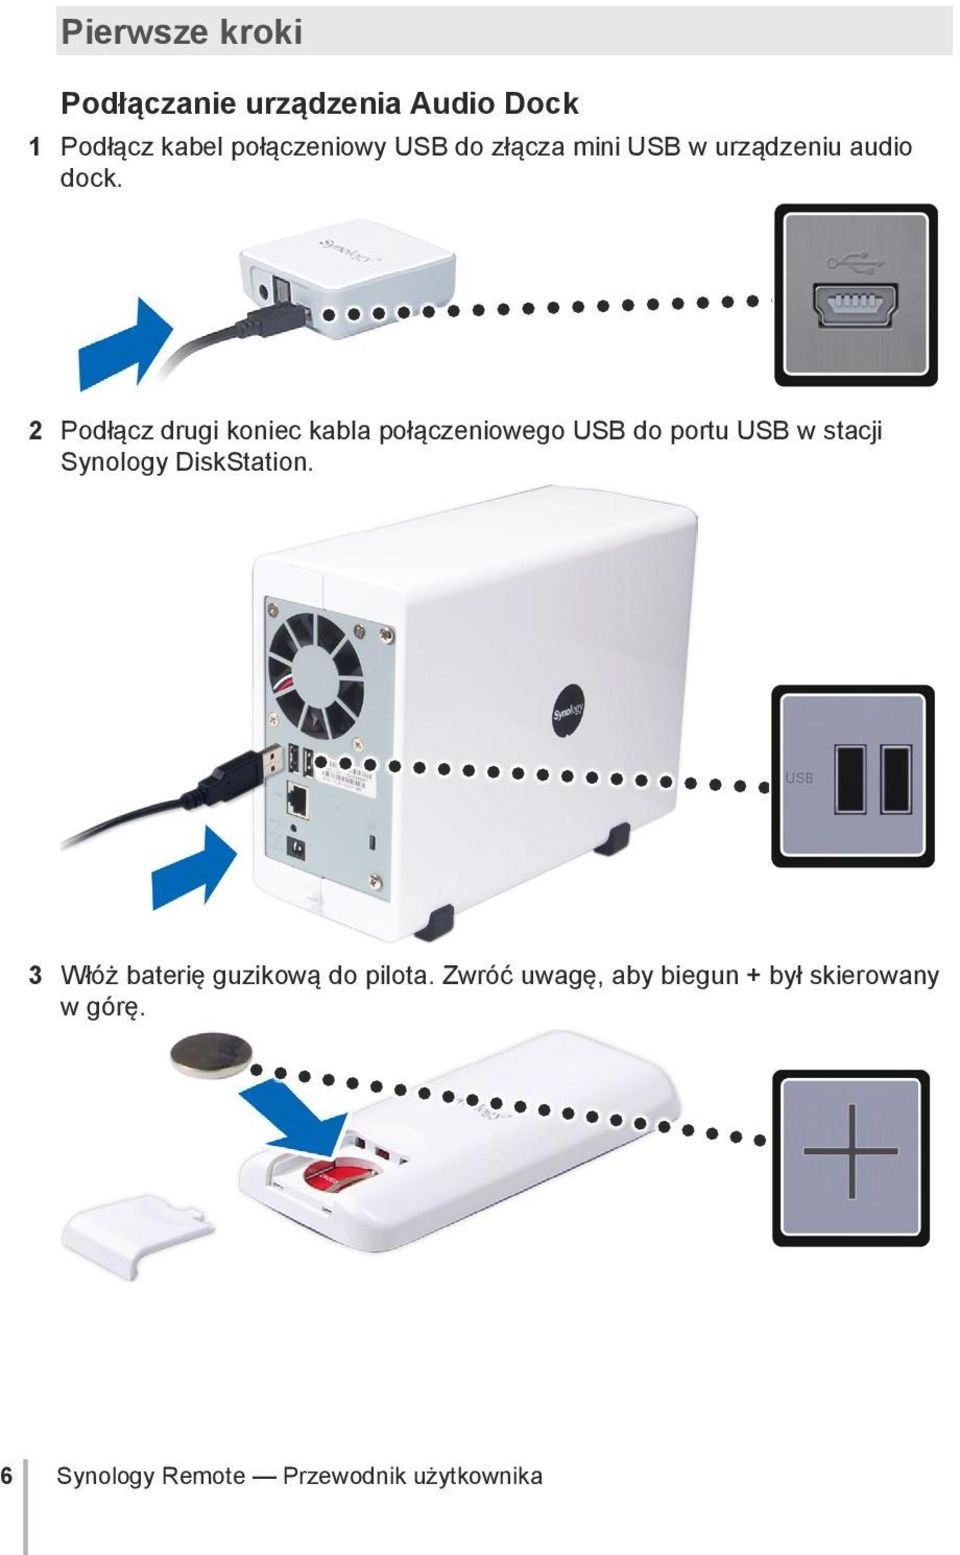 2 Podłącz drugi koniec kabla połączeniowego USB do portu USB w stacji Synology